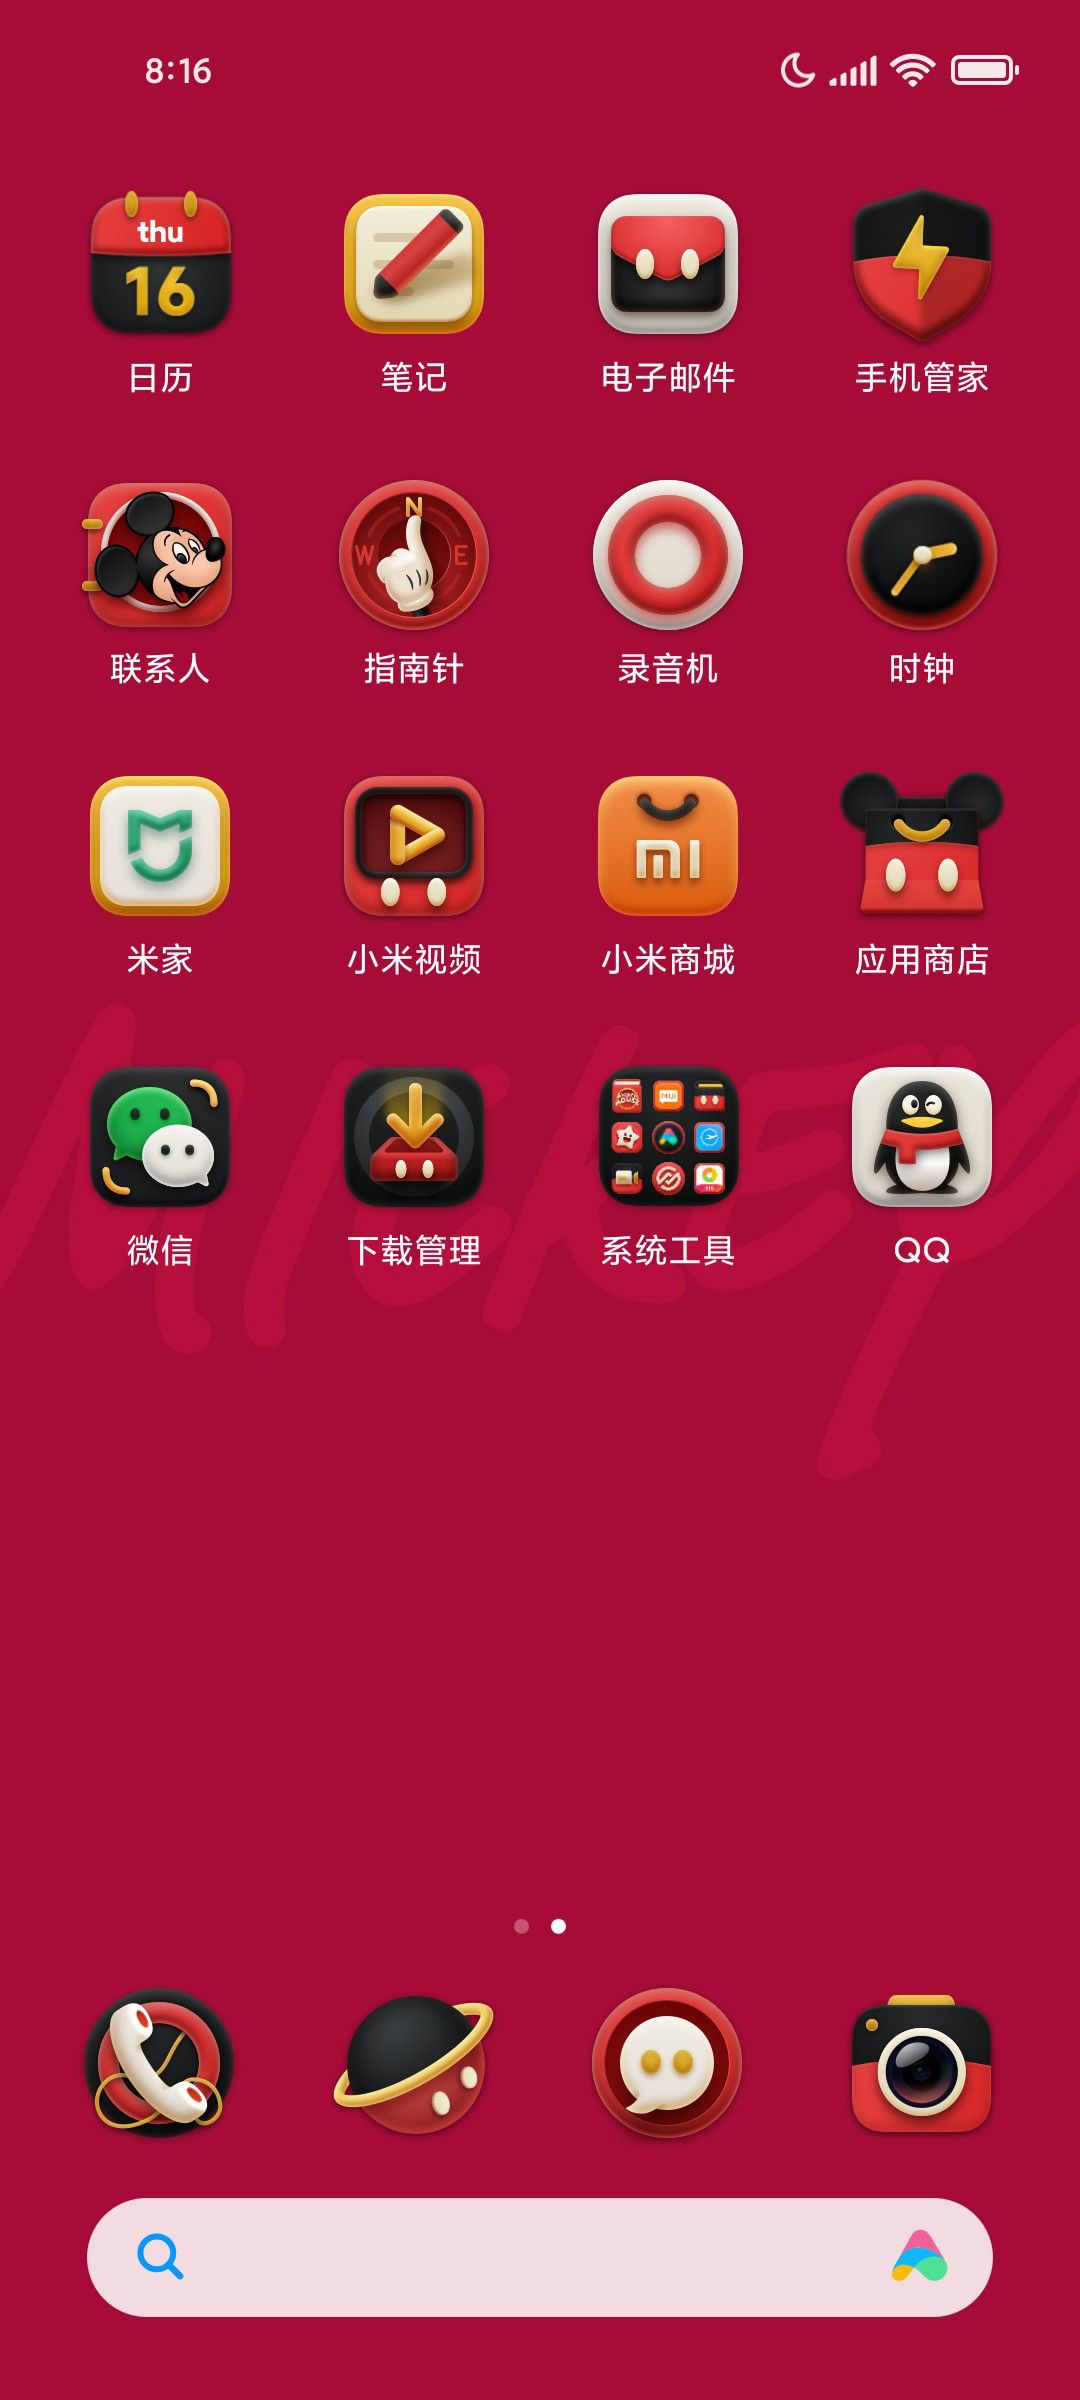 เฉลย Xiaomi Civi 3 คอลเลกชันฉลองครบรอบ 100 ปี ดิสนีย์ จะมาในธีม Mickey Mouse